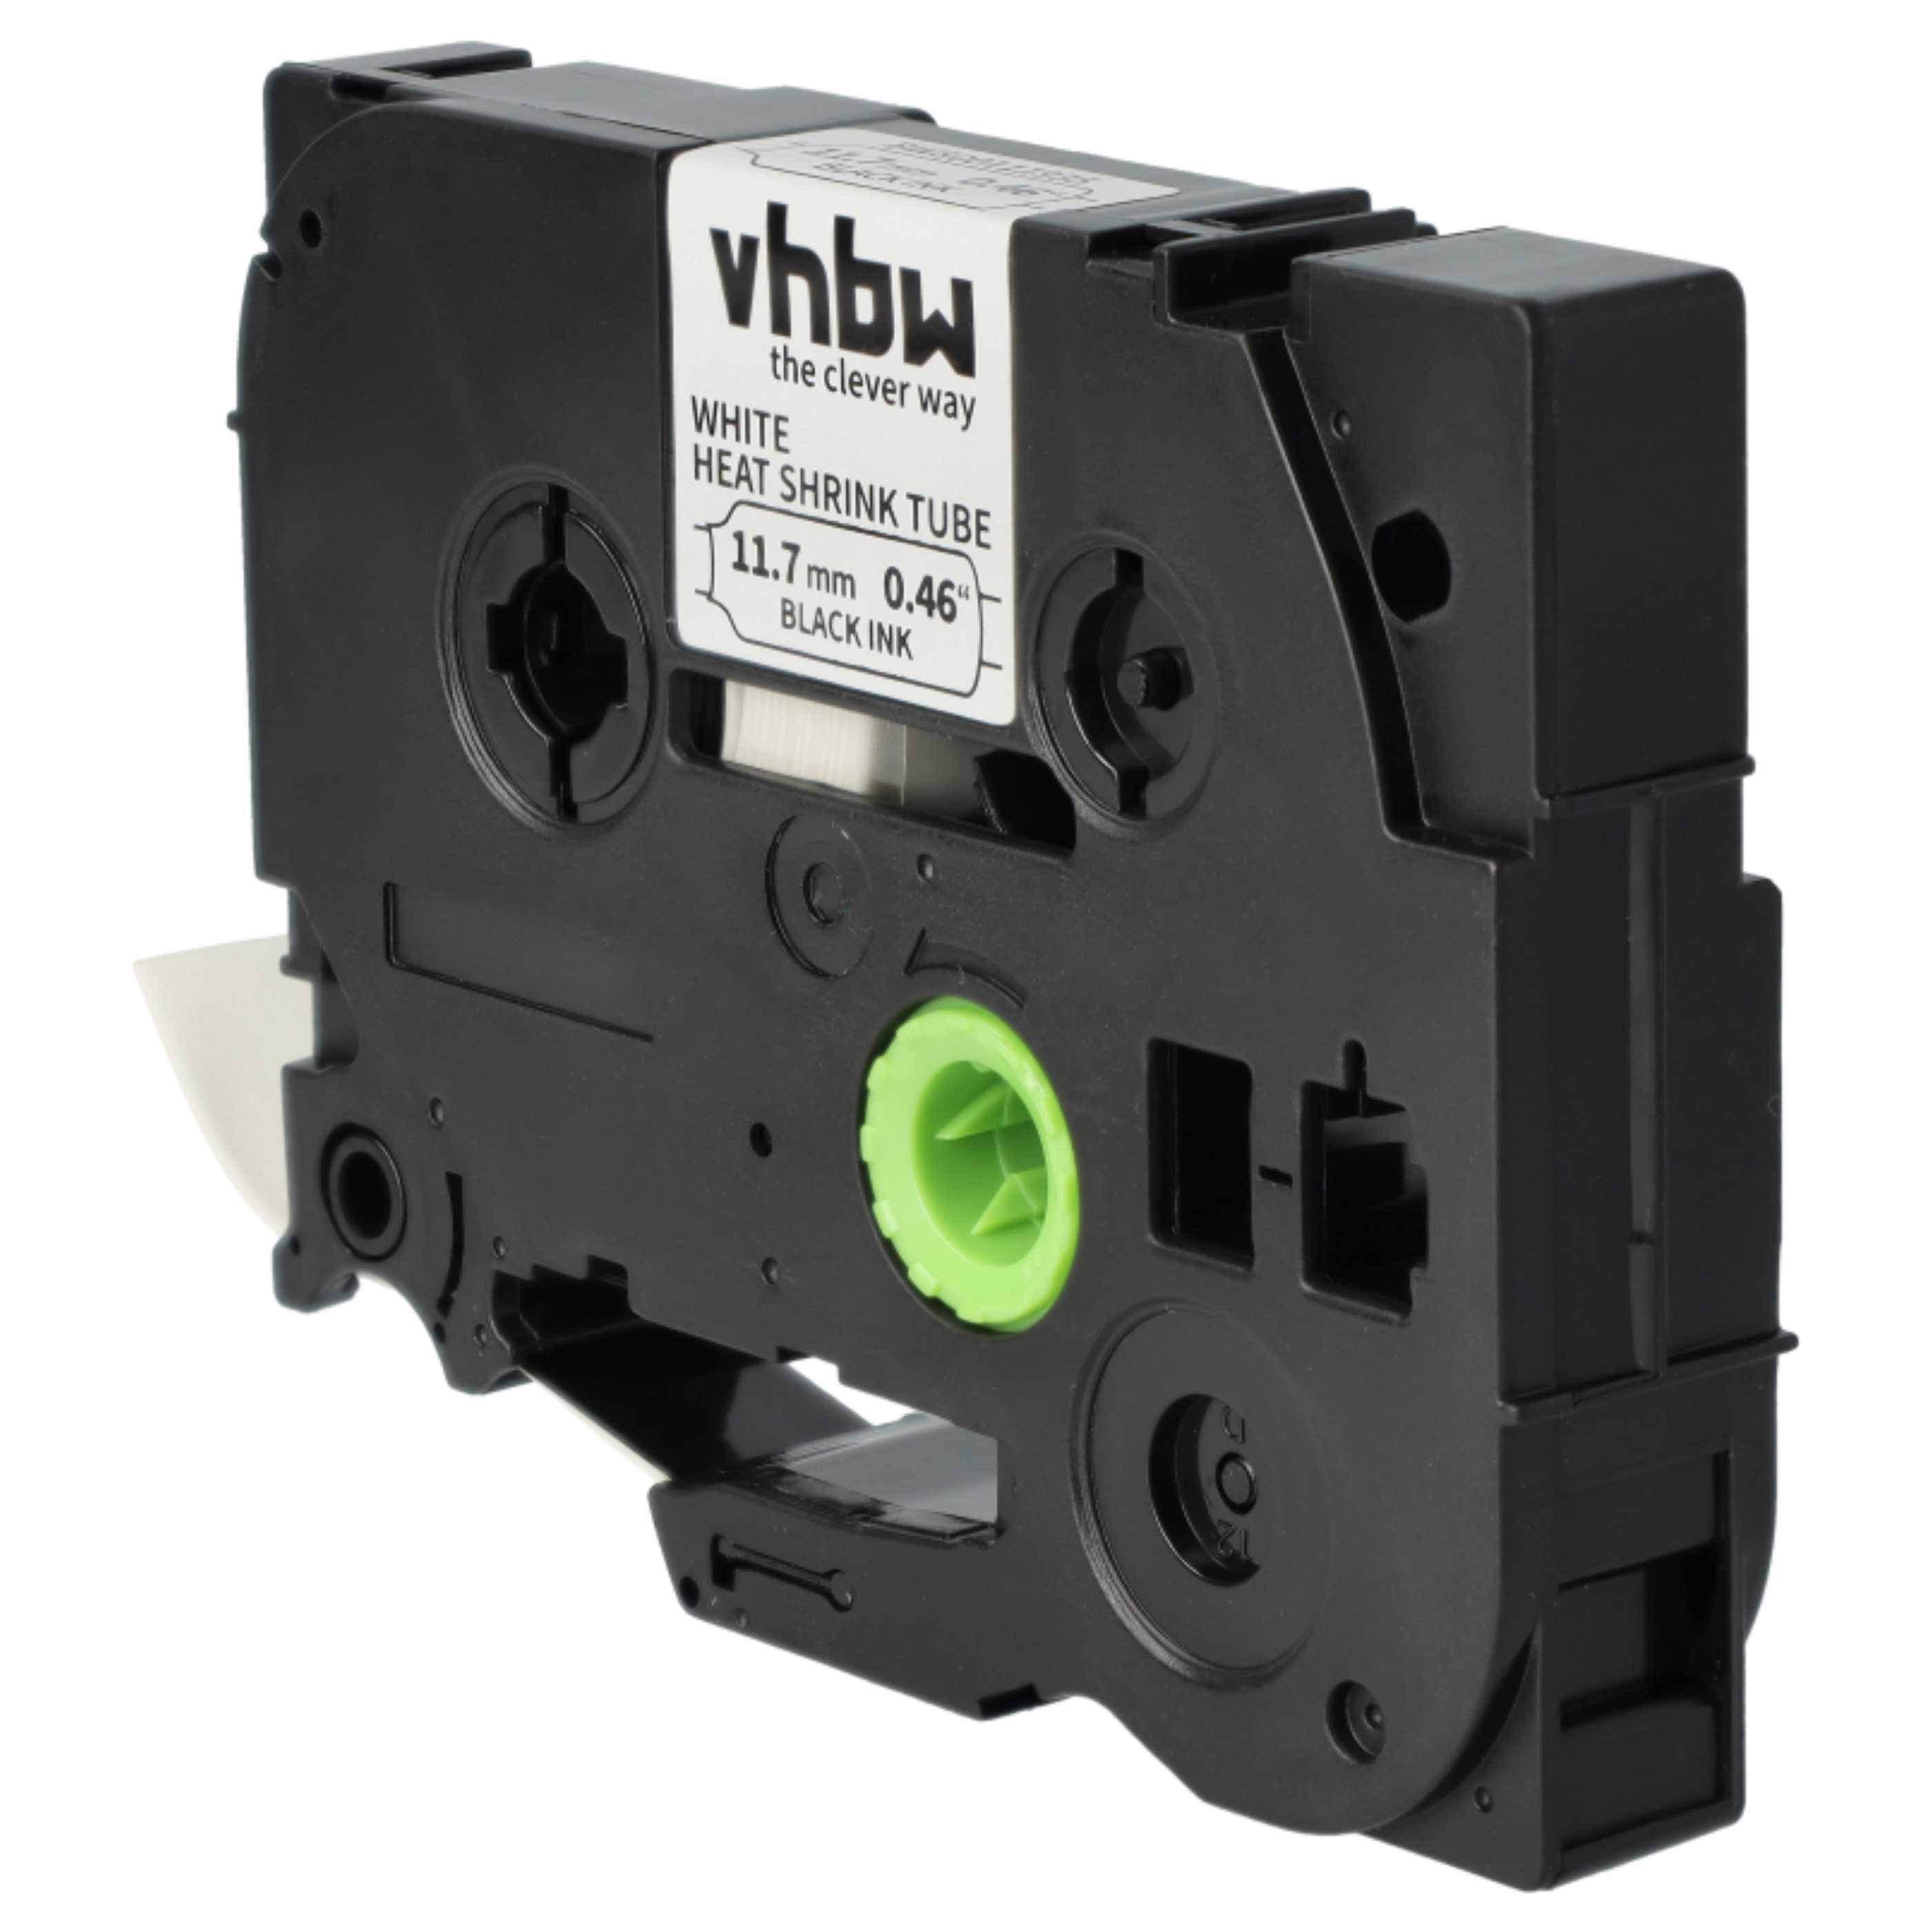 Cassette à ruban remplace Brother AHS-231 - 11,7mm lettrage Noir ruban Blanc, thermorétractable, 11,7 mm